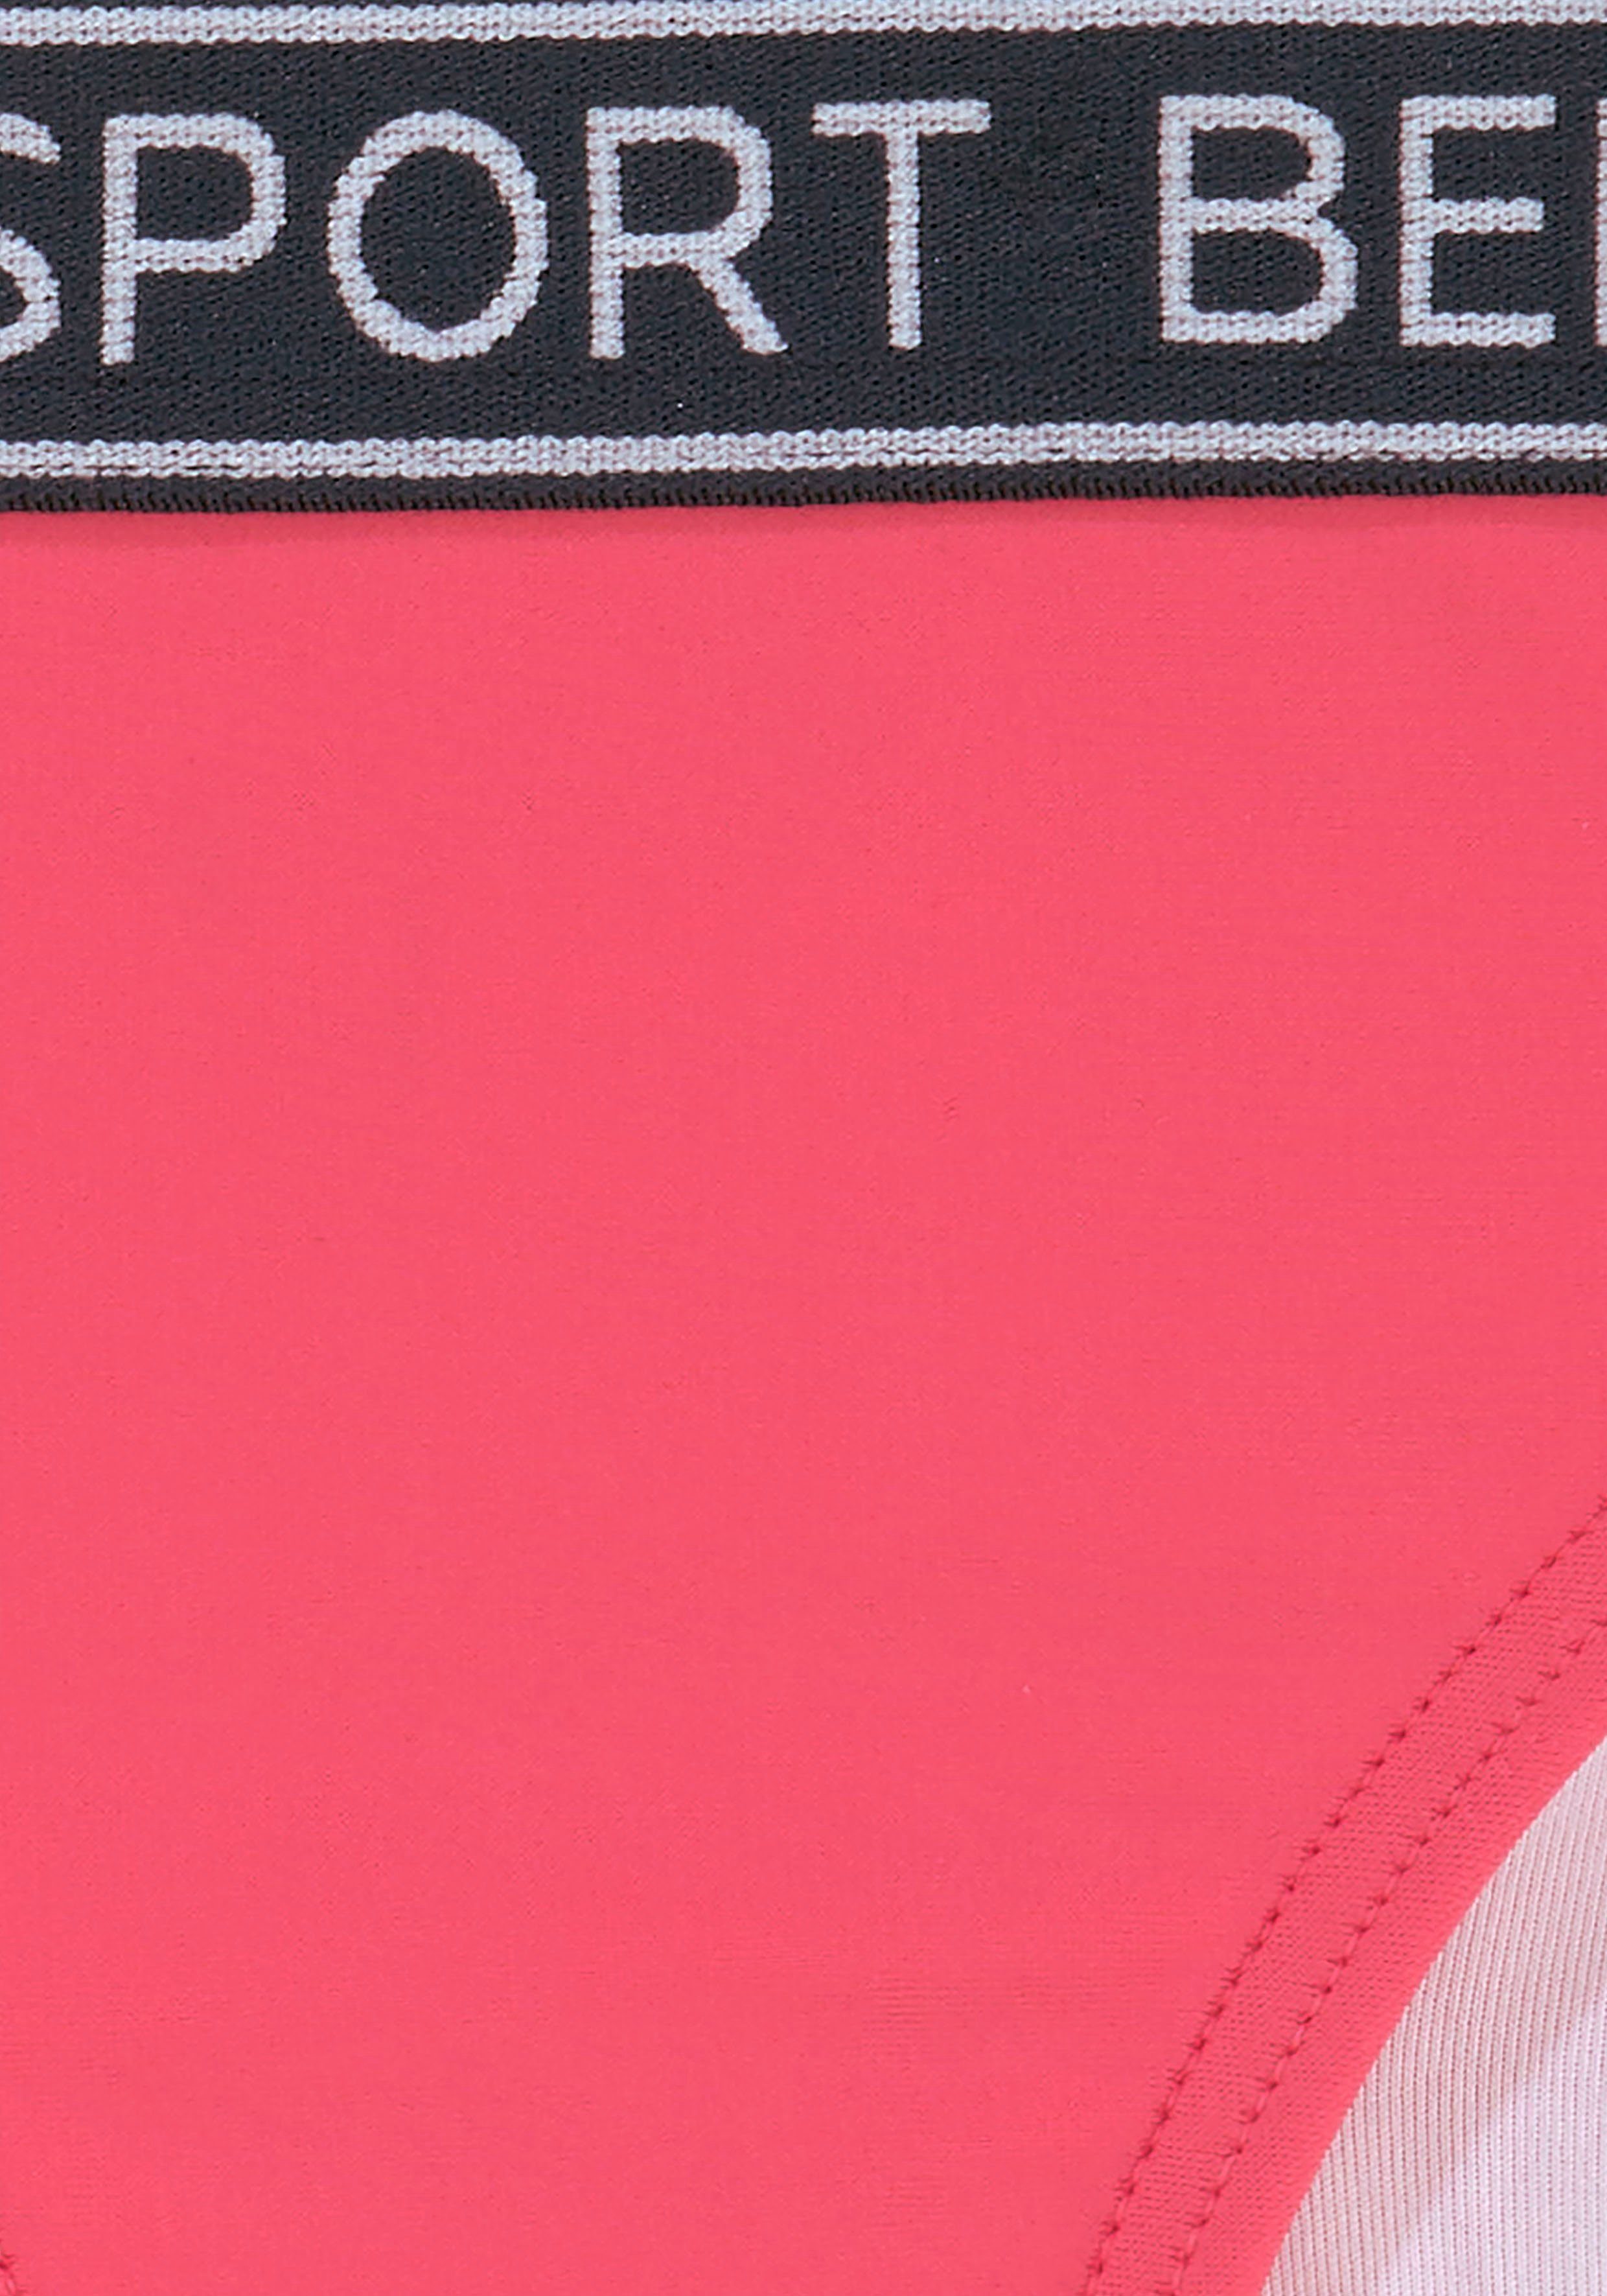 pink Farben sportlichem in Bench. Design Yva und Triangel-Bikini Kids